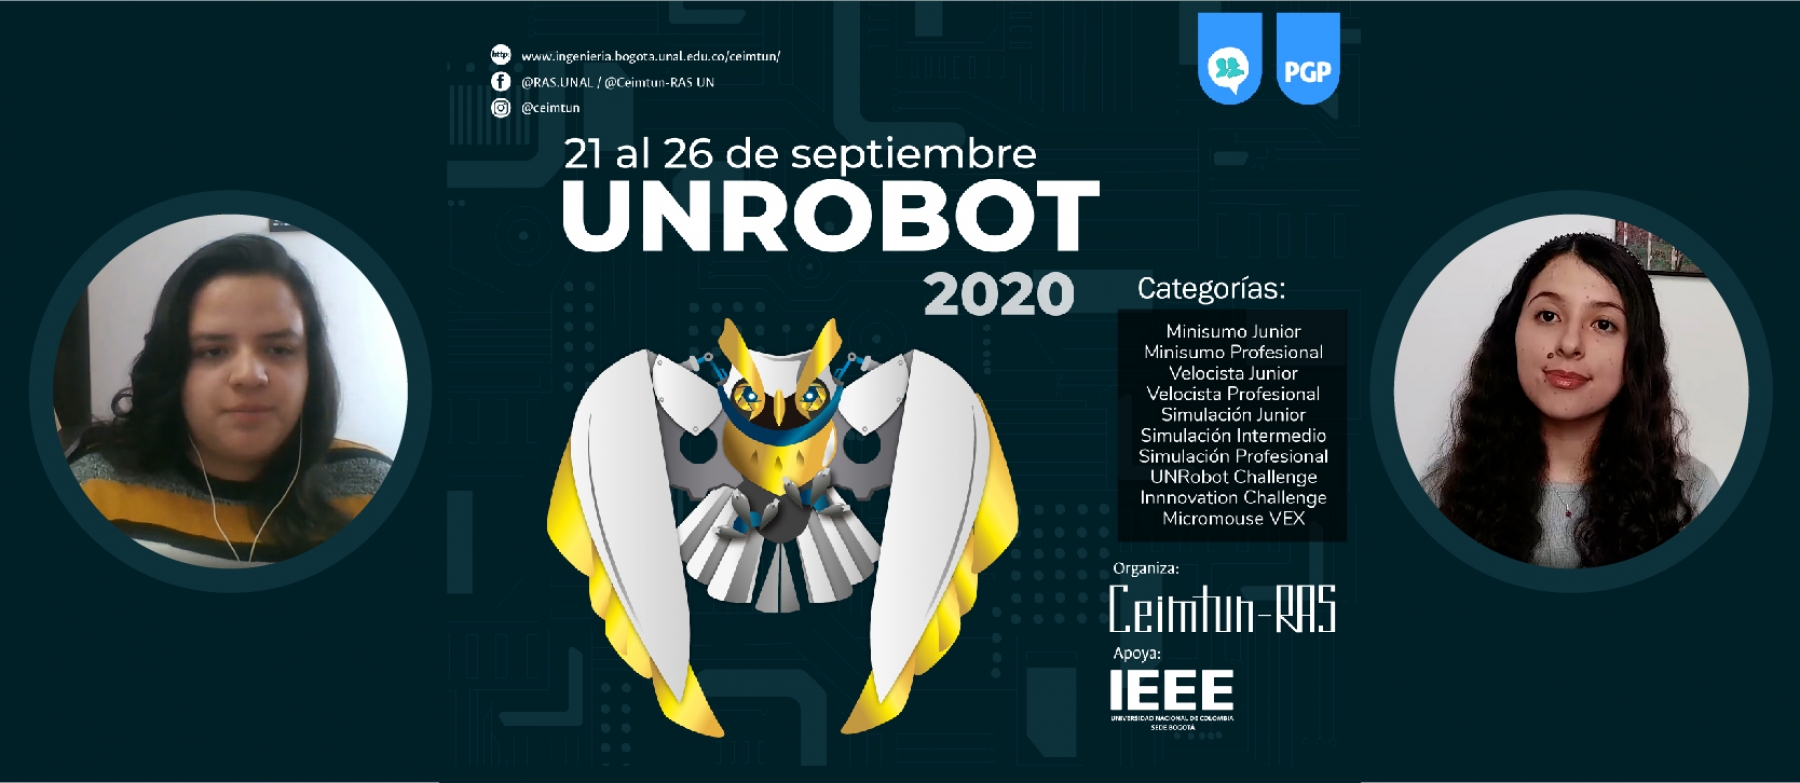 UNRobot 2020 el concurso de robótica gratuito más grande de Colombia y este año, contará con la participación de países internacionales